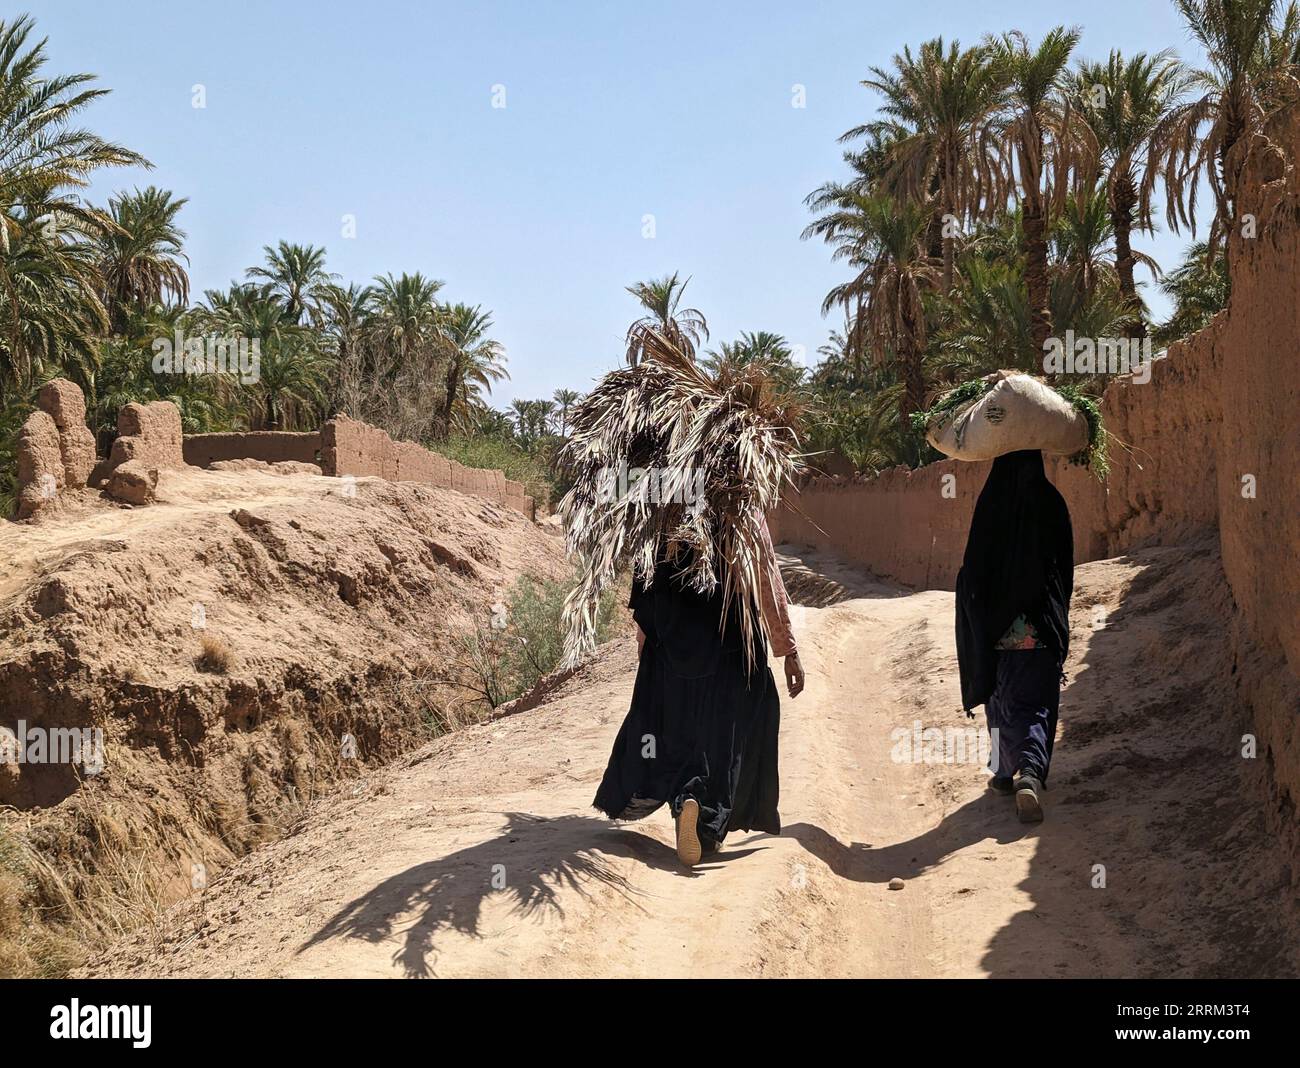 Un randonneur dans un paysage agricole pittoresque dans la belle vallée de Draa, palmeraies entourant le chemin de randonnée, Maroc Banque D'Images